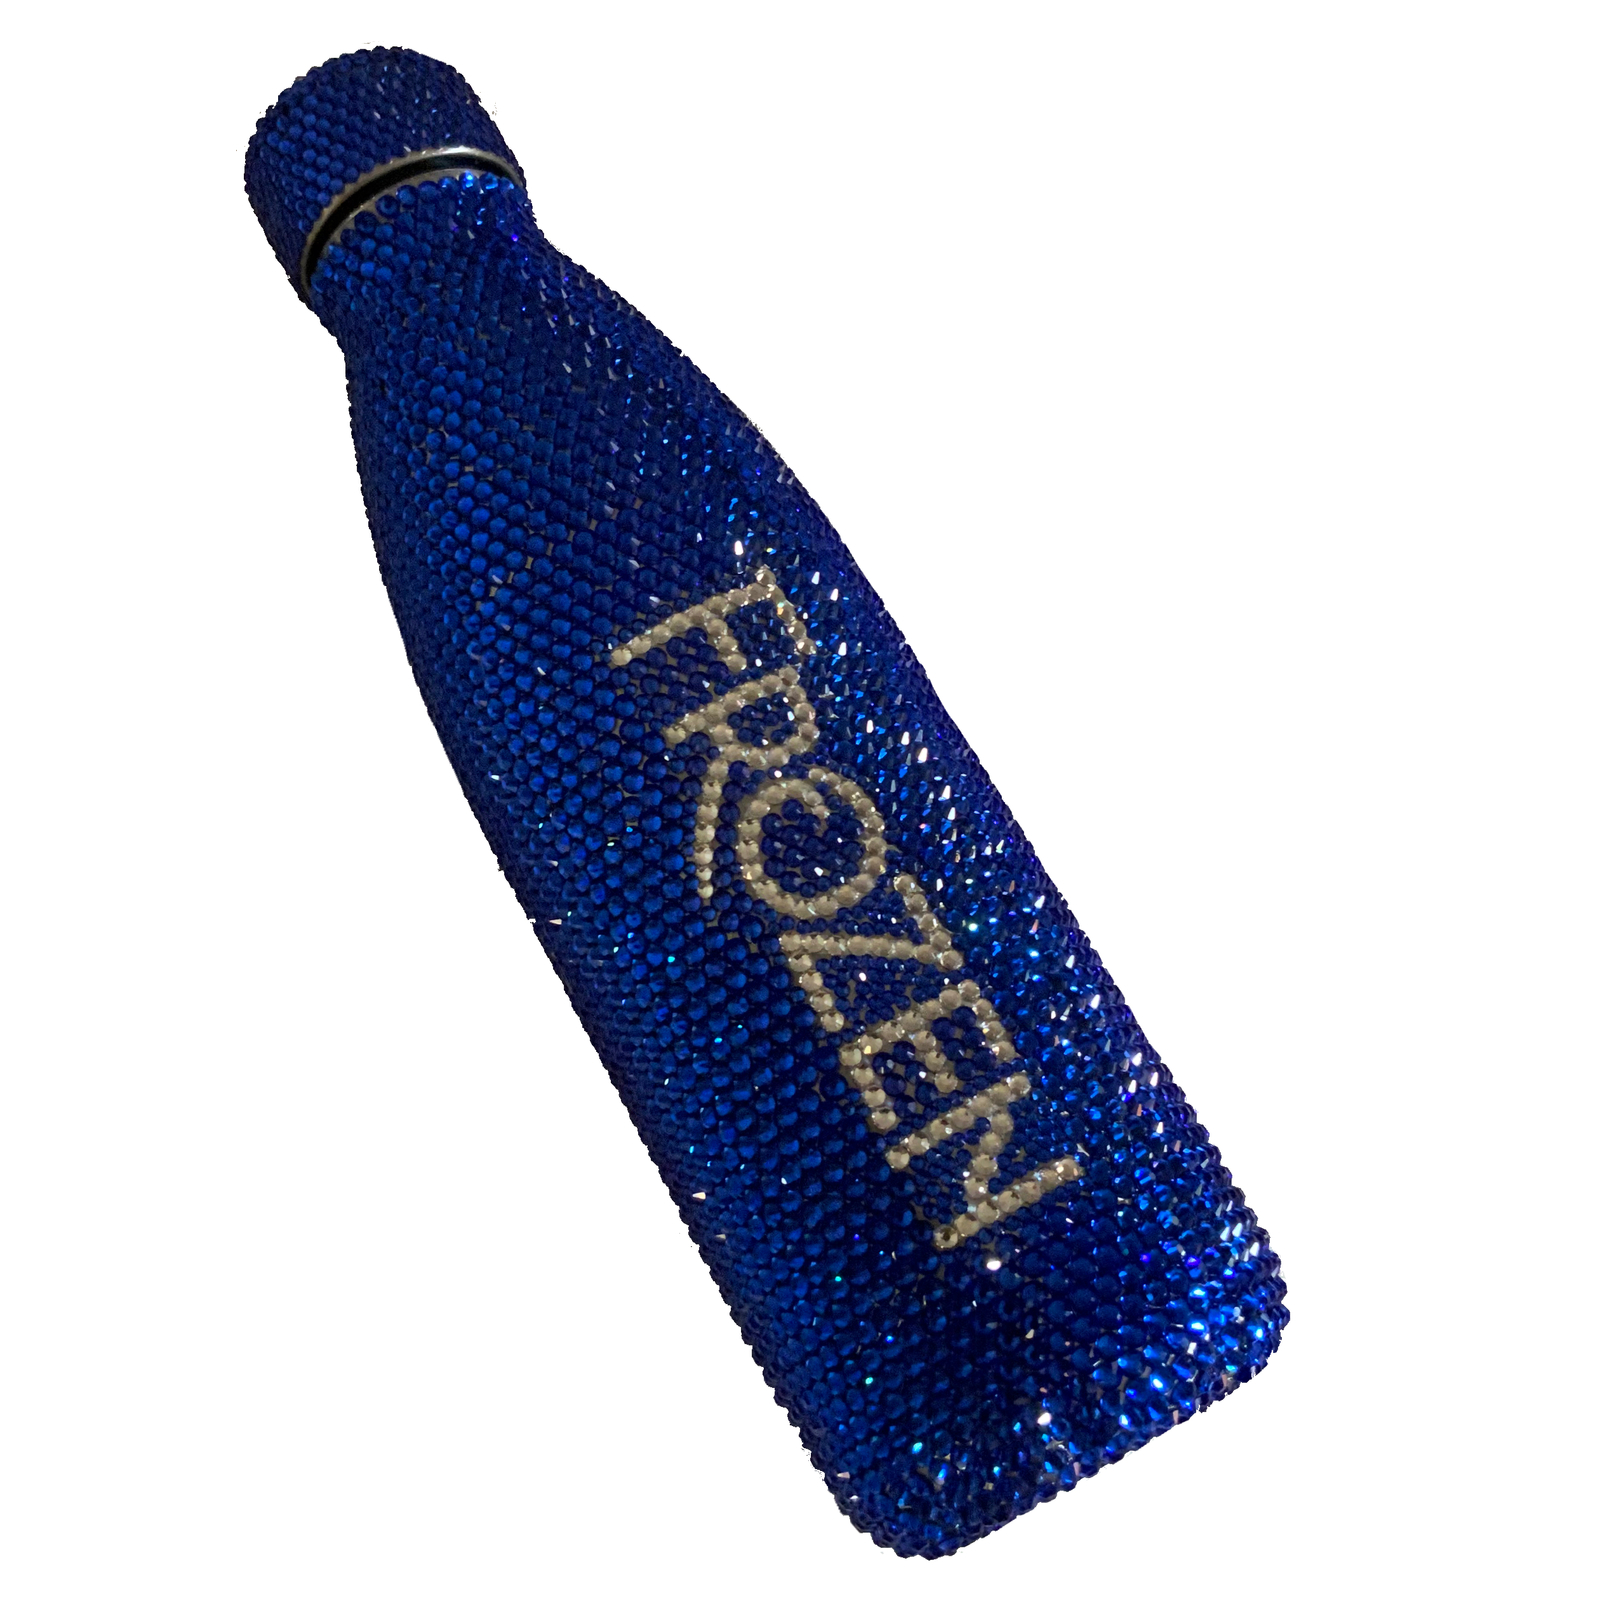 Frozen Elsa Blue Water Bottle